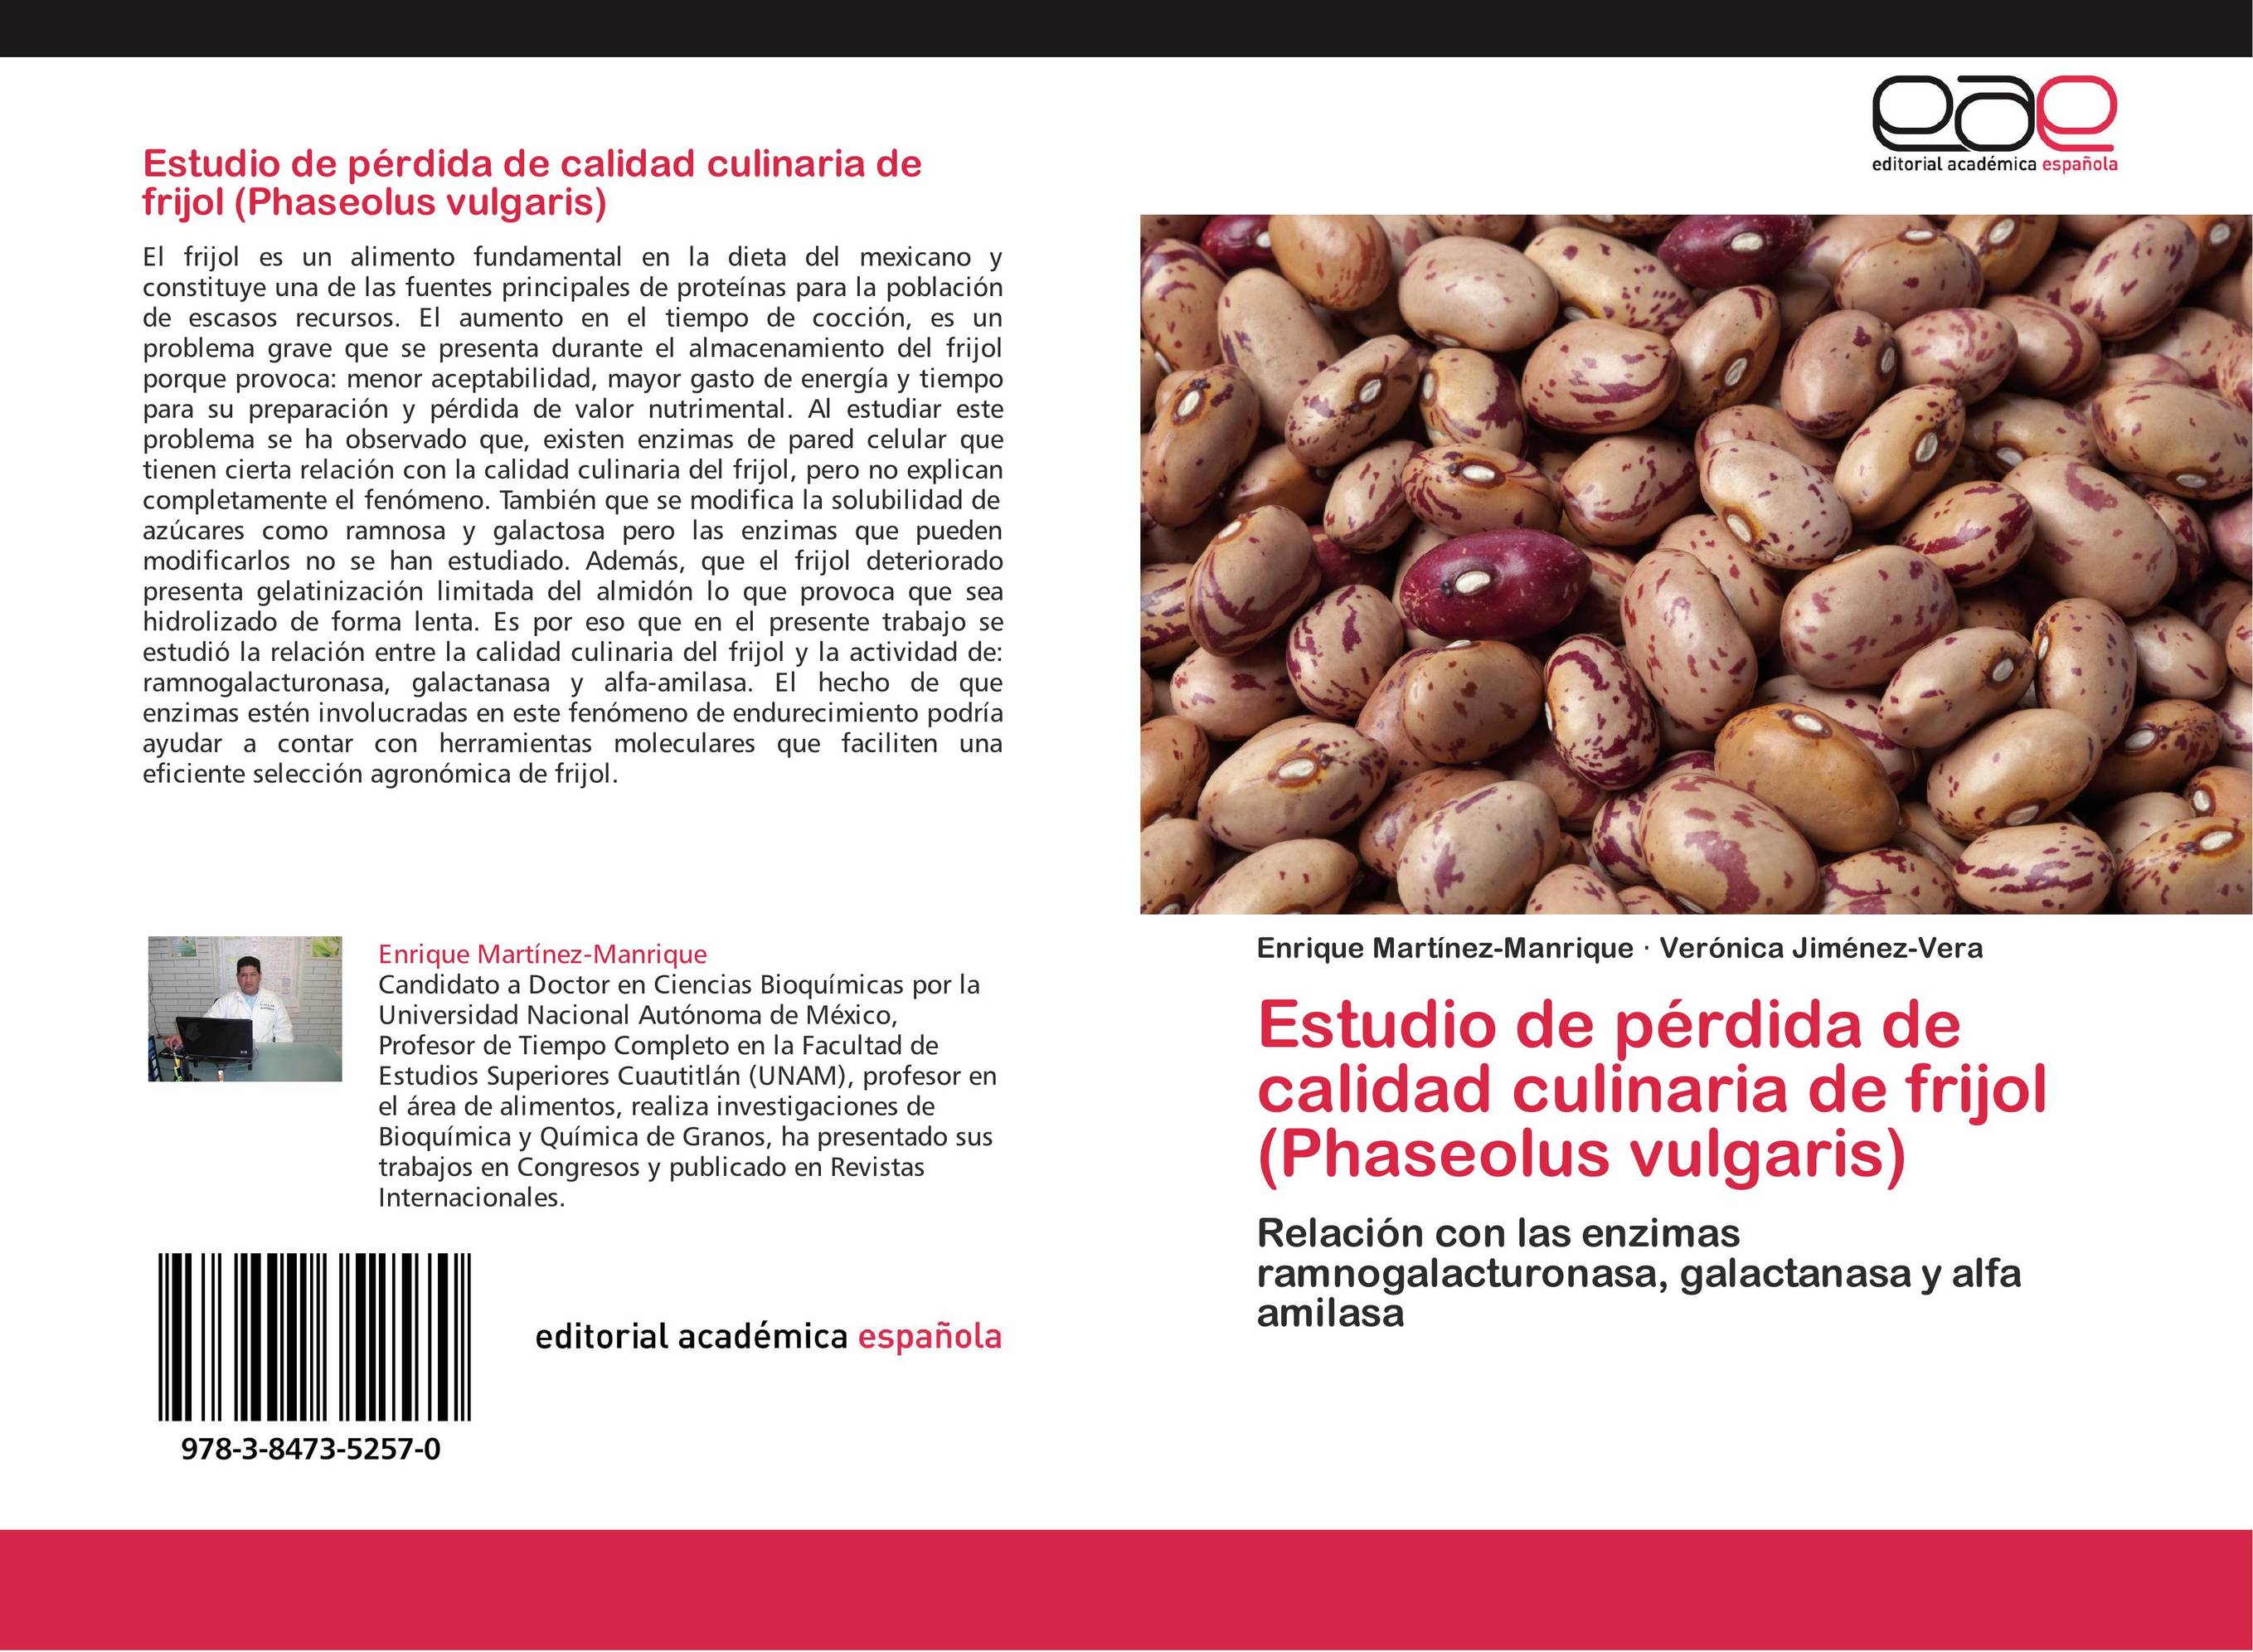 Estudio de pérdida de calidad culinaria de frijol (Phaseolus vulgaris)